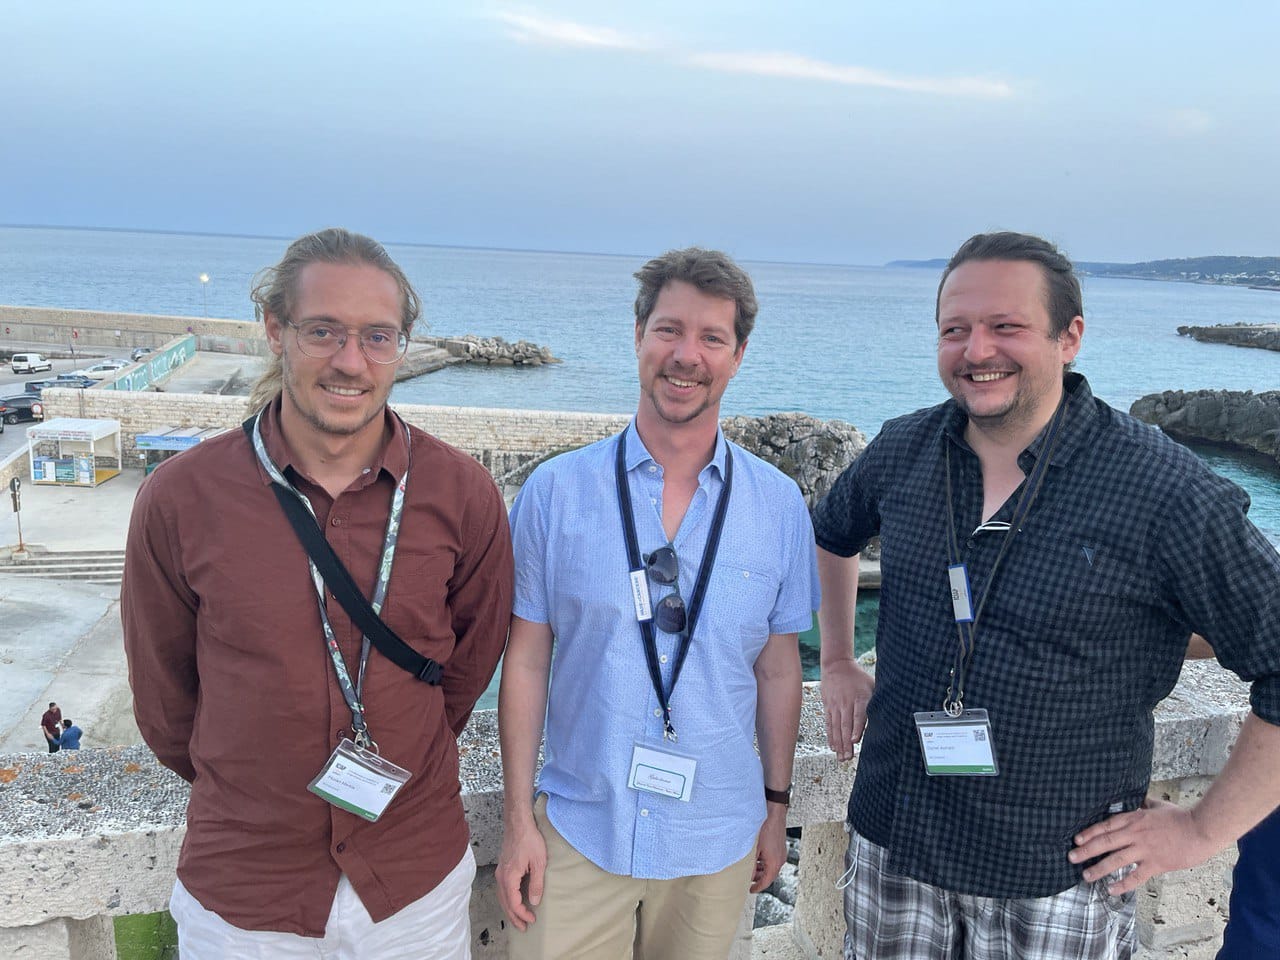 DiBSE Alumnus Daniel Aumayr und Wiss. DiBSE Mitarbeiter Florian Merkle präsentieren ihre wissenschaftlichen Arbeiten bei der ICIAP International Conference on IMAGE ANALYSIS AND PROCESSING in Lecce, Italien. 